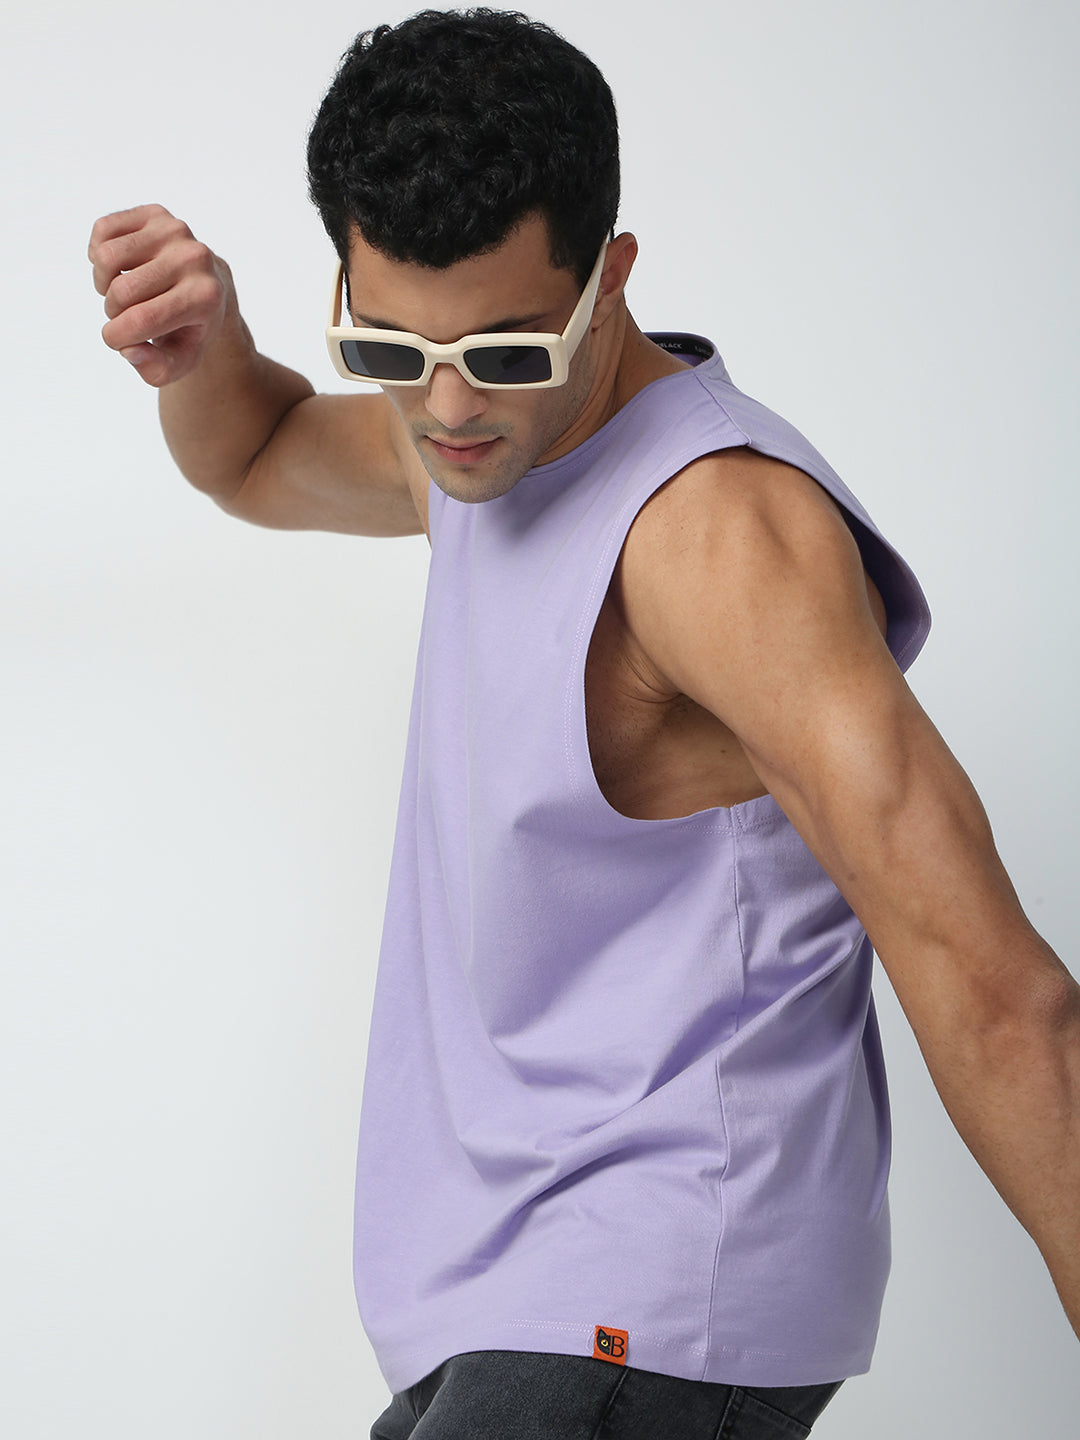 Buy Blamblack Men's Lavender Color GYM Wear Plain Vest